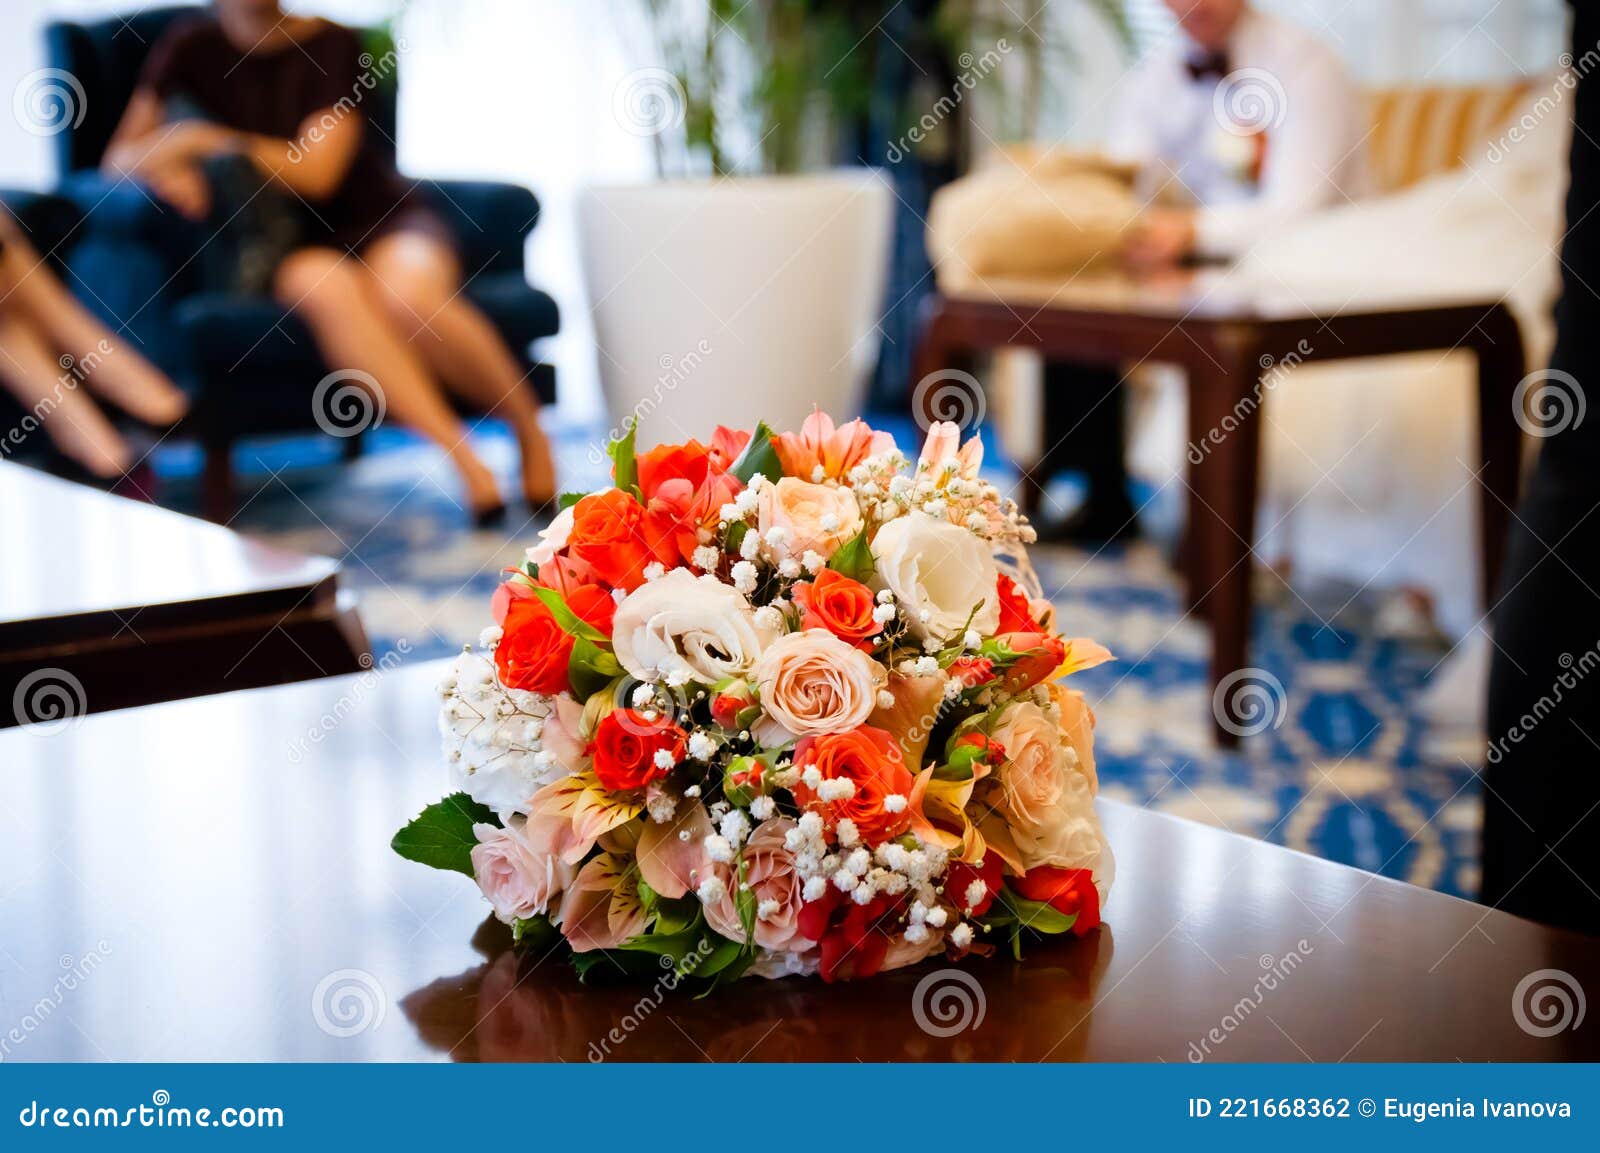 нежный букет цветов лежит на столе свадебный букет из апельсиновых ирозовых цветов лежит на столе Стоковое Фото - изображение насчитывающейсмешивание, славно: 221668362